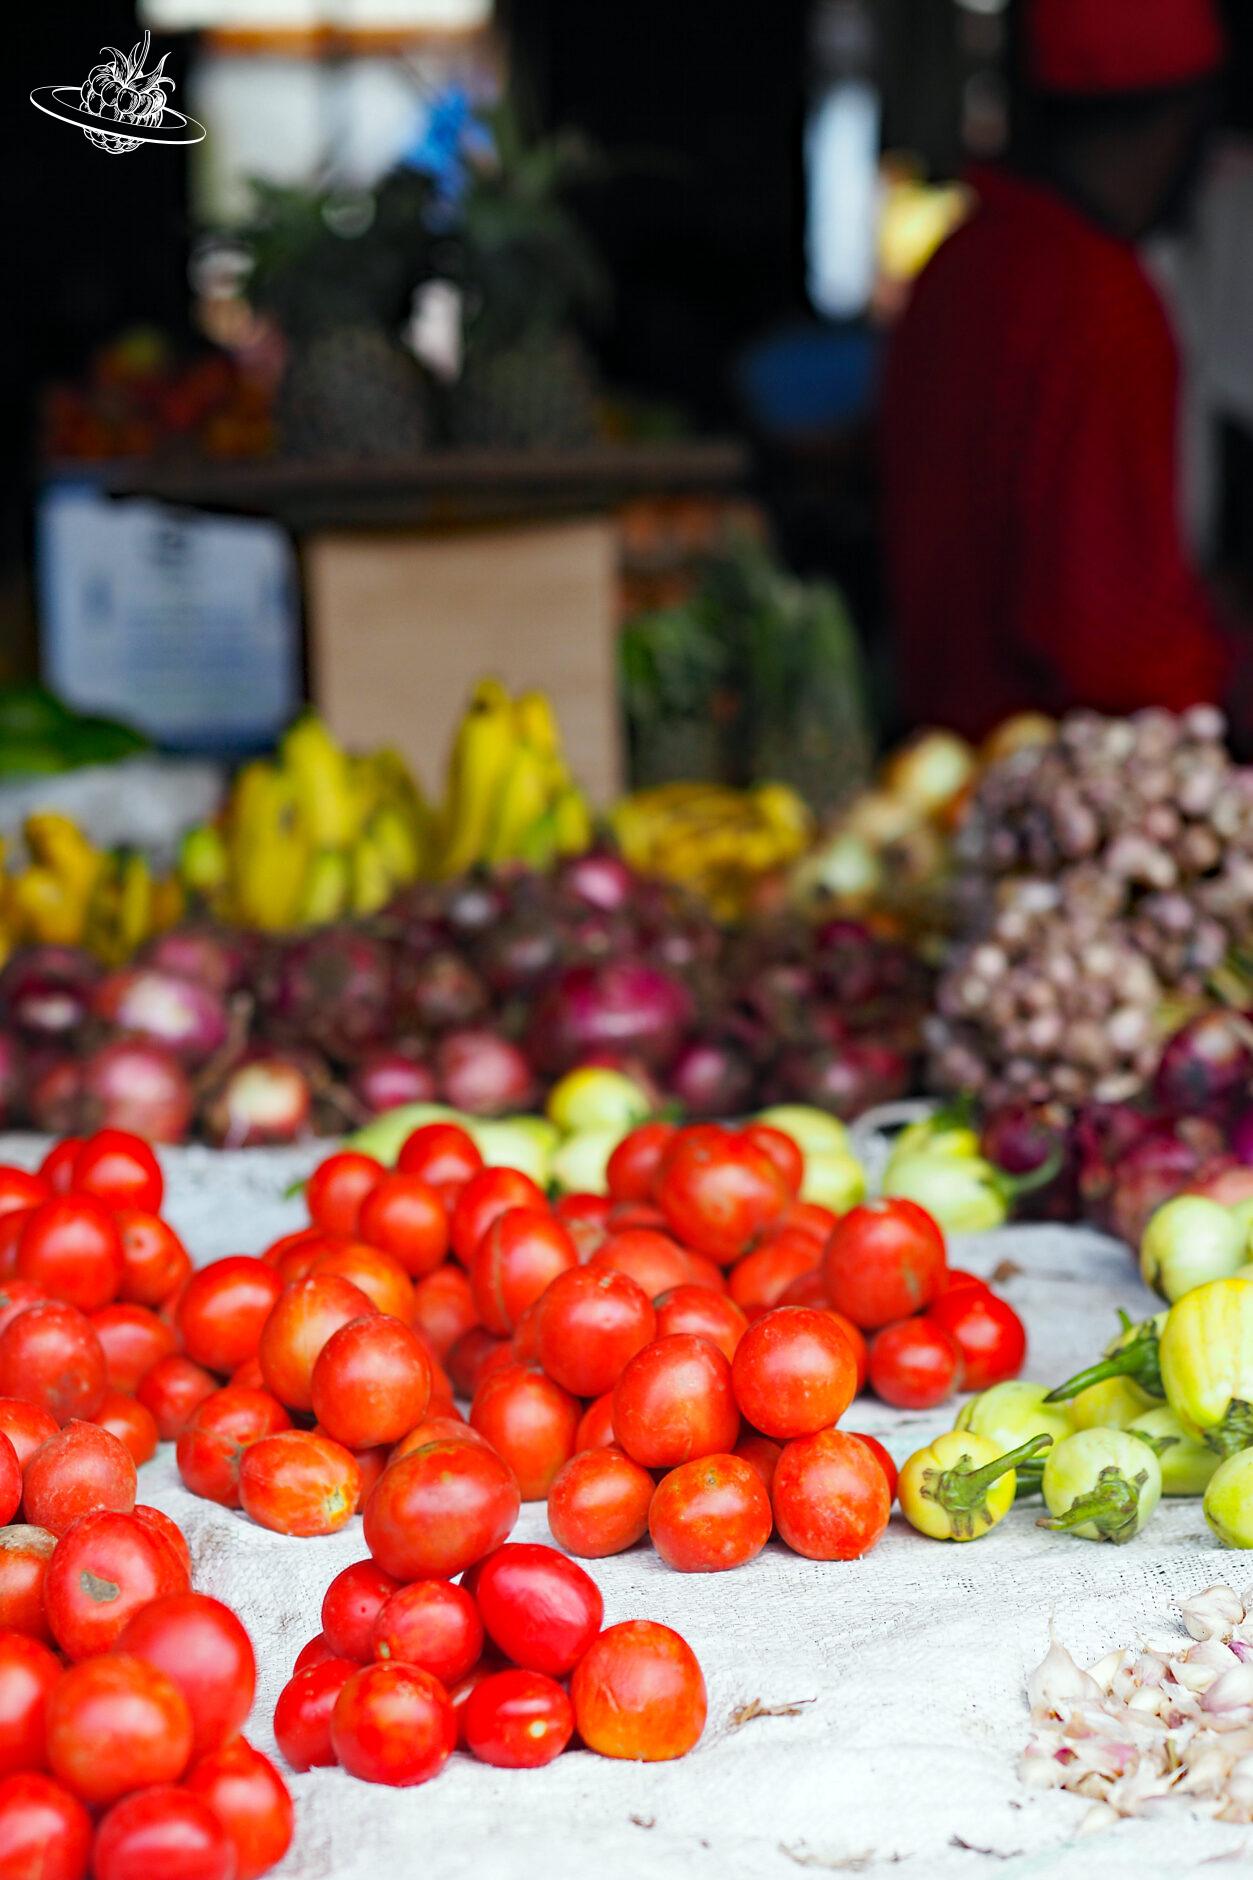 Früchte und Tomaten im Markt